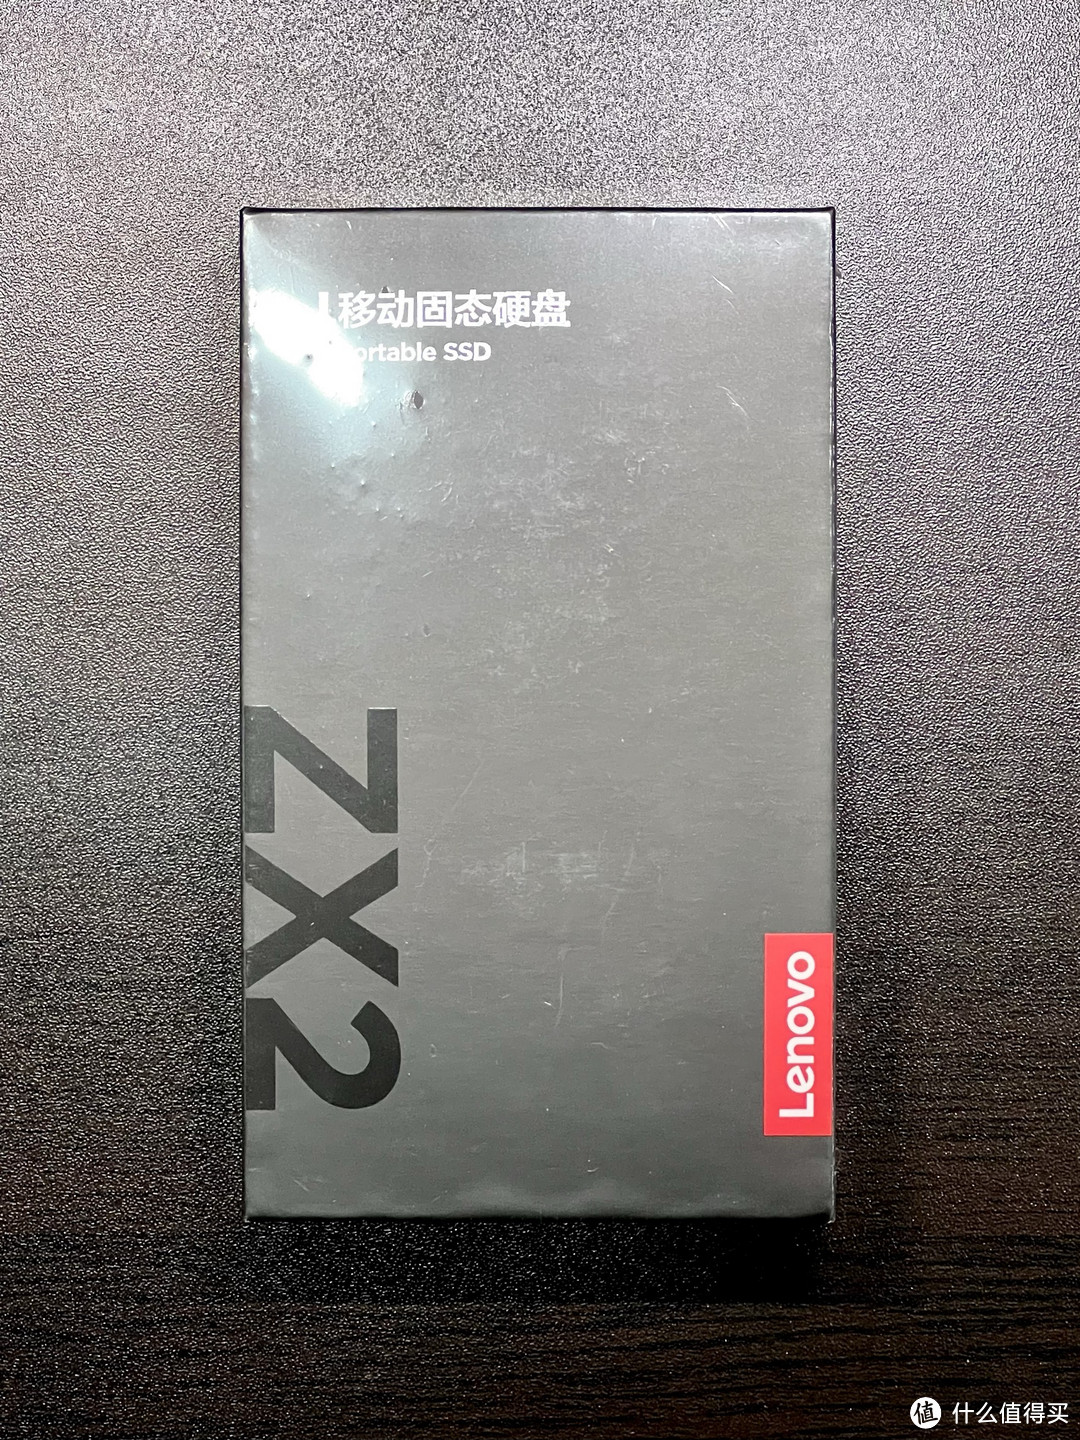 亮点满满的移动固态硬盘——联想ZX2移动固态硬盘2TB版开箱体验